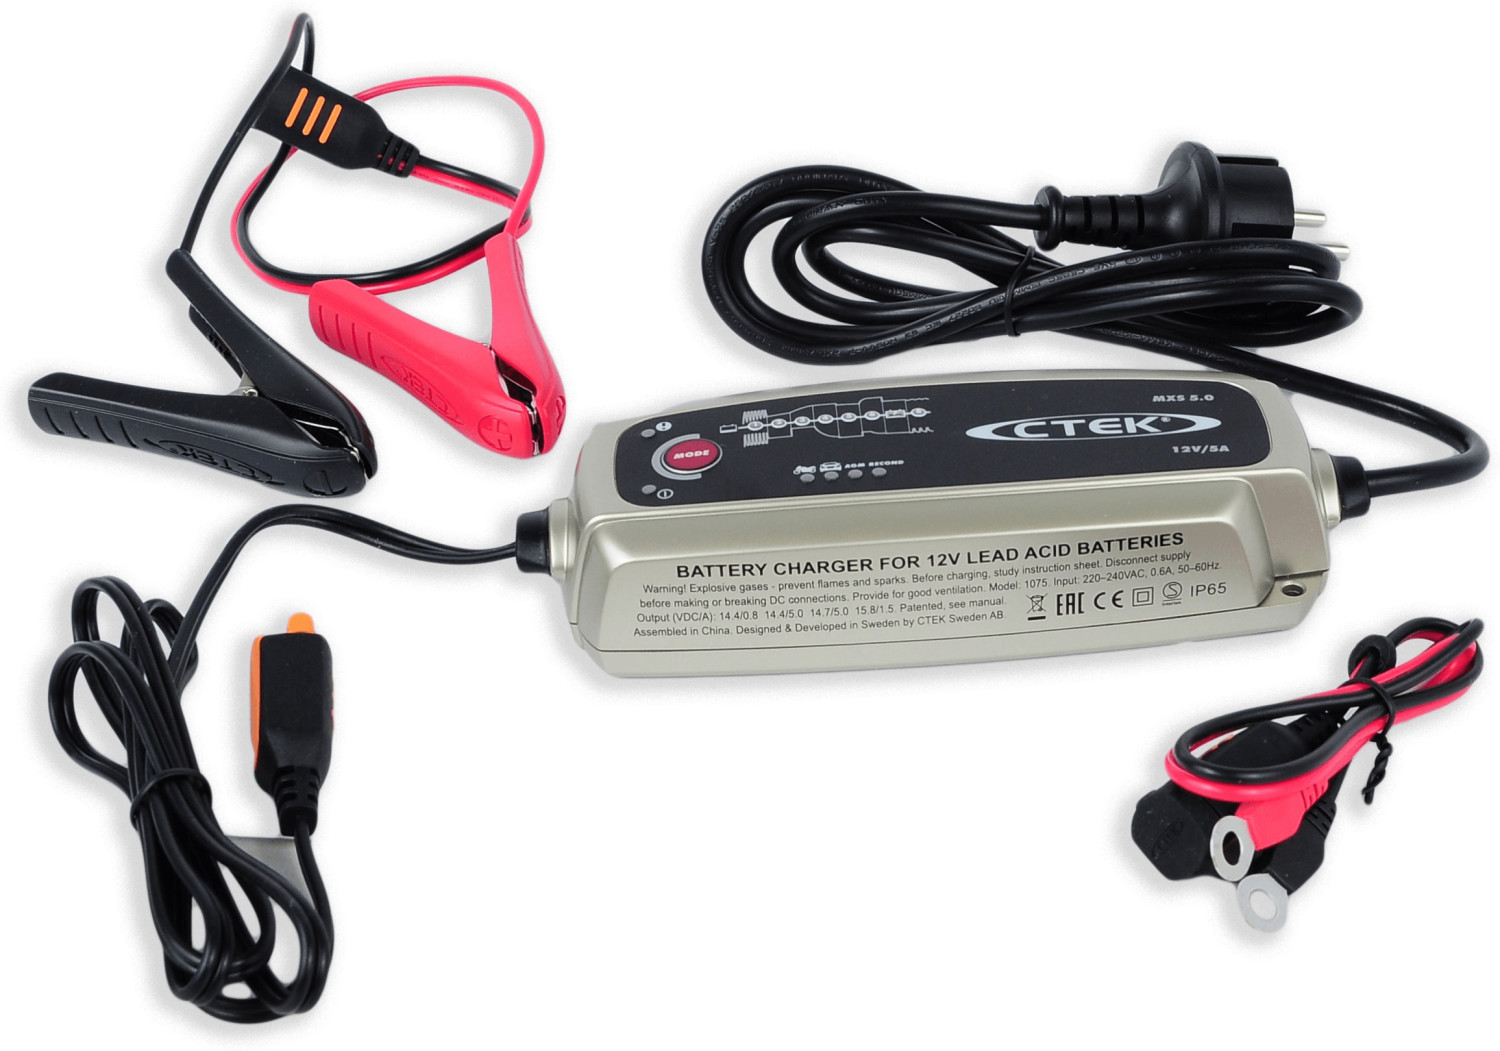 Chargeur Batterie 5.0 CTEK Auto Moto voiture Chargeur de Batterie